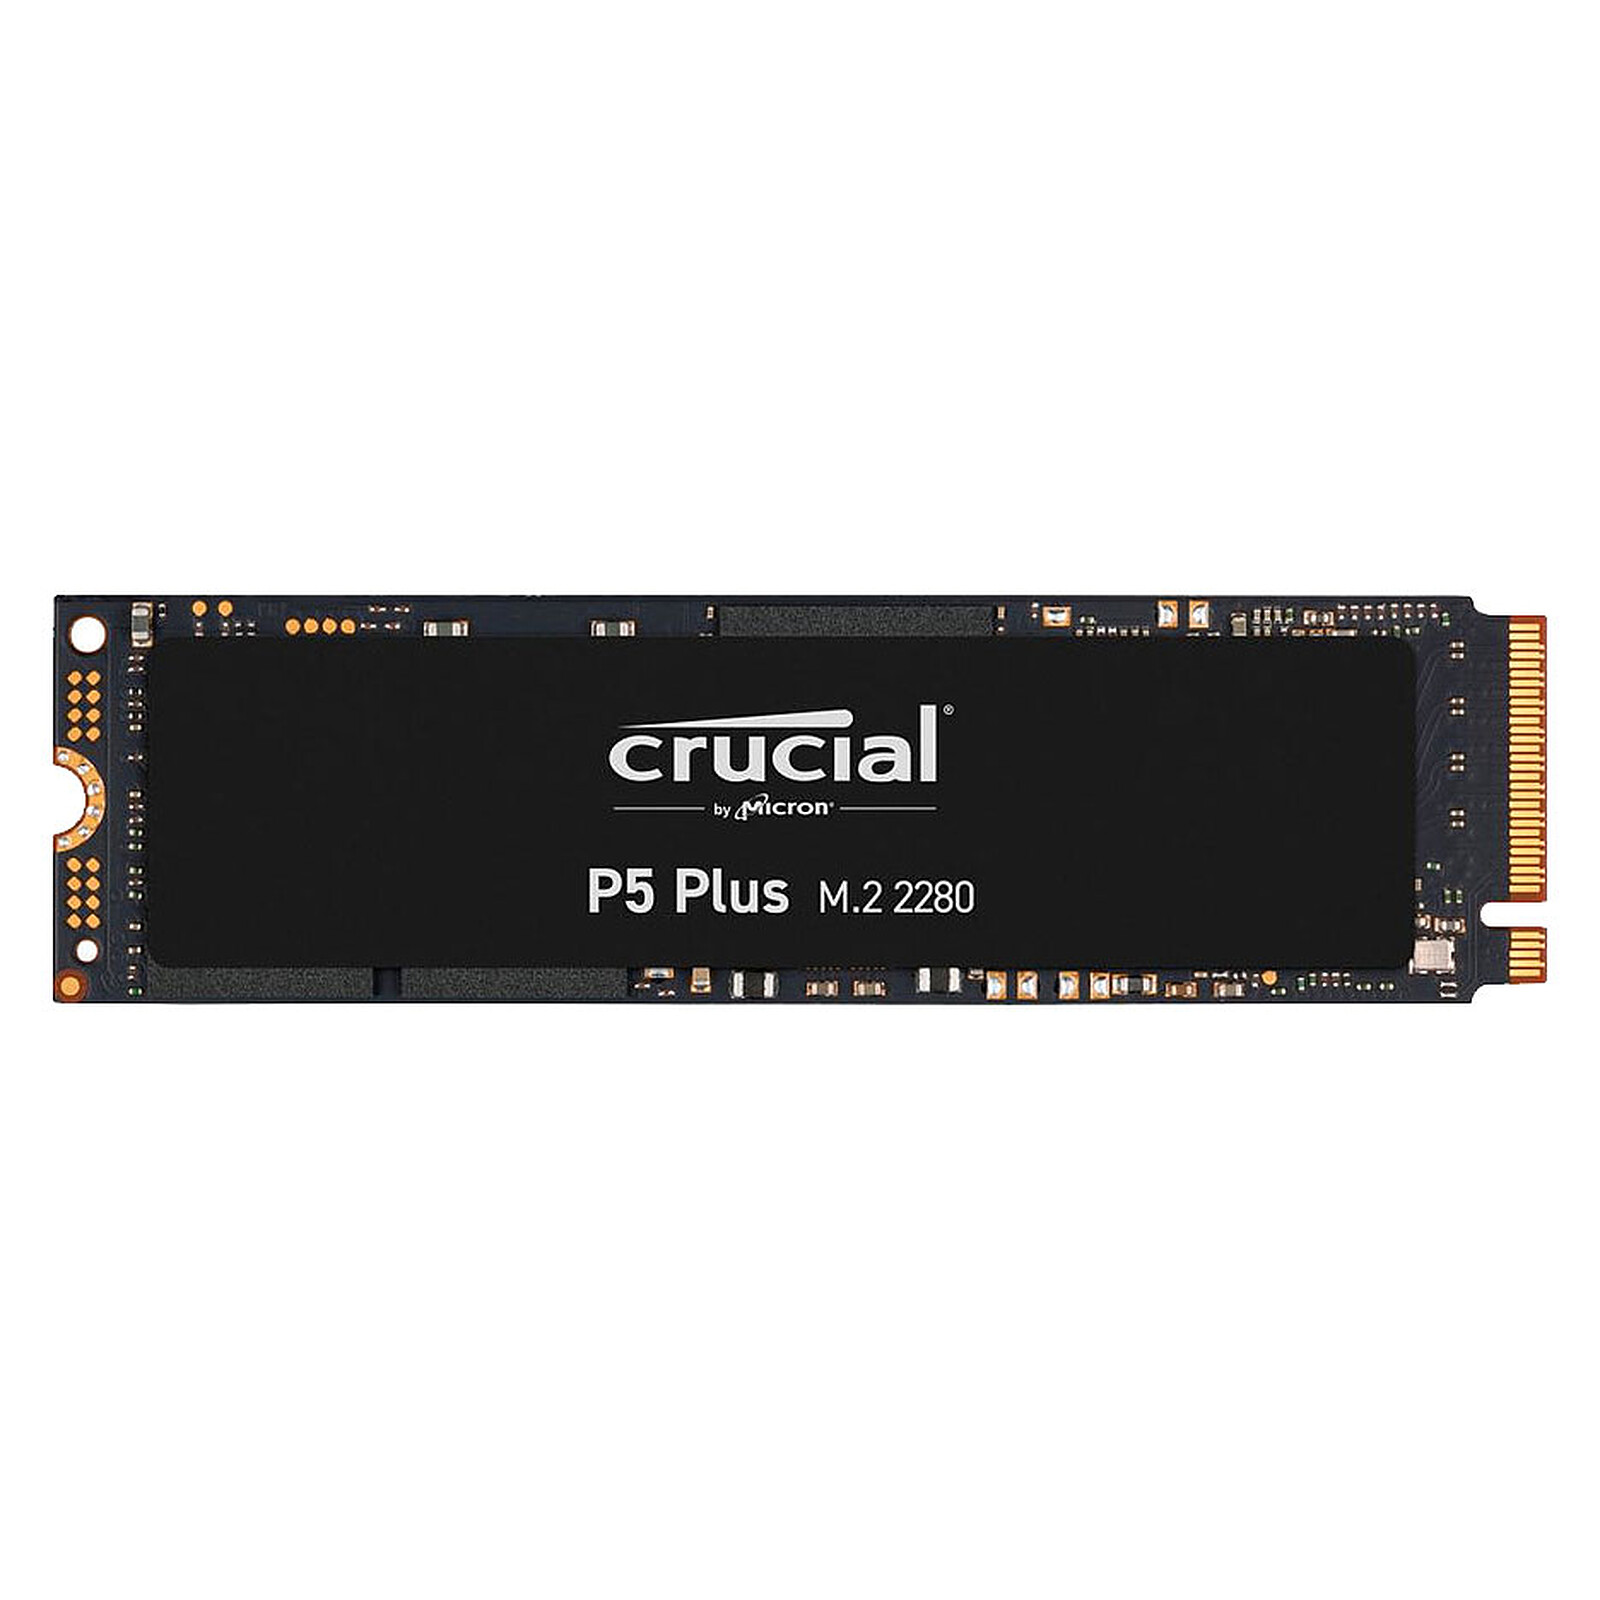 Crucial クルーシャル 500GB NVMe PCIe M.2 SSD P2シリーズ Type2280 CT500P2SSD8 5年保証・翌日配達 グローバル パッケージ 衝撃セール 送料無料